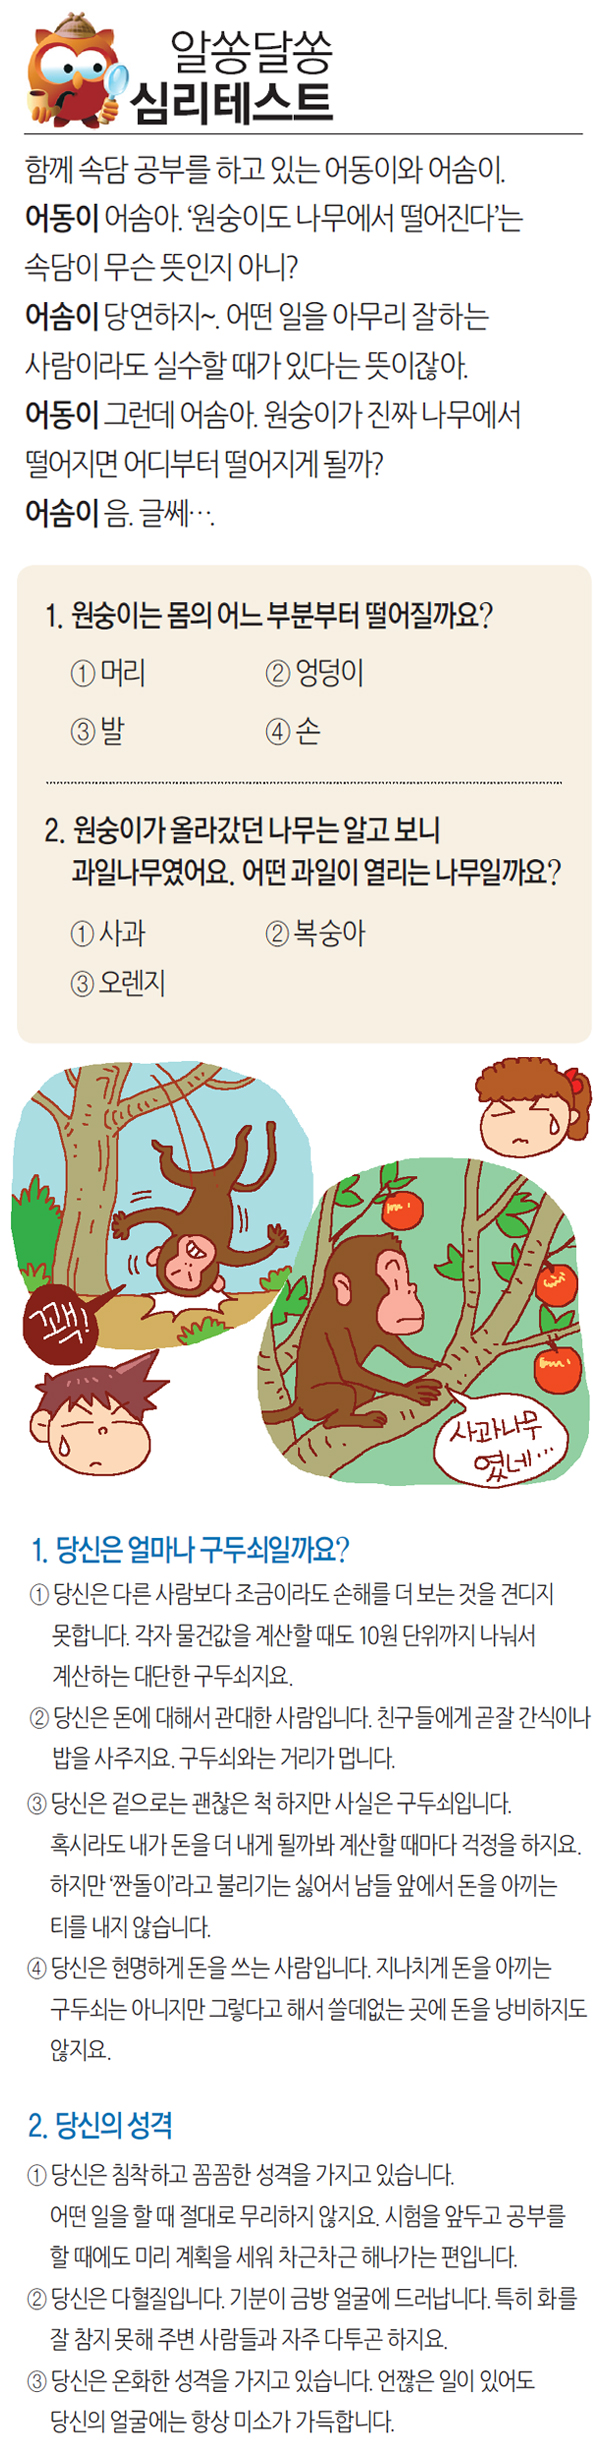 [알쏭달쏭 심리테스트]원숭이도 나무에서 떨어진다?